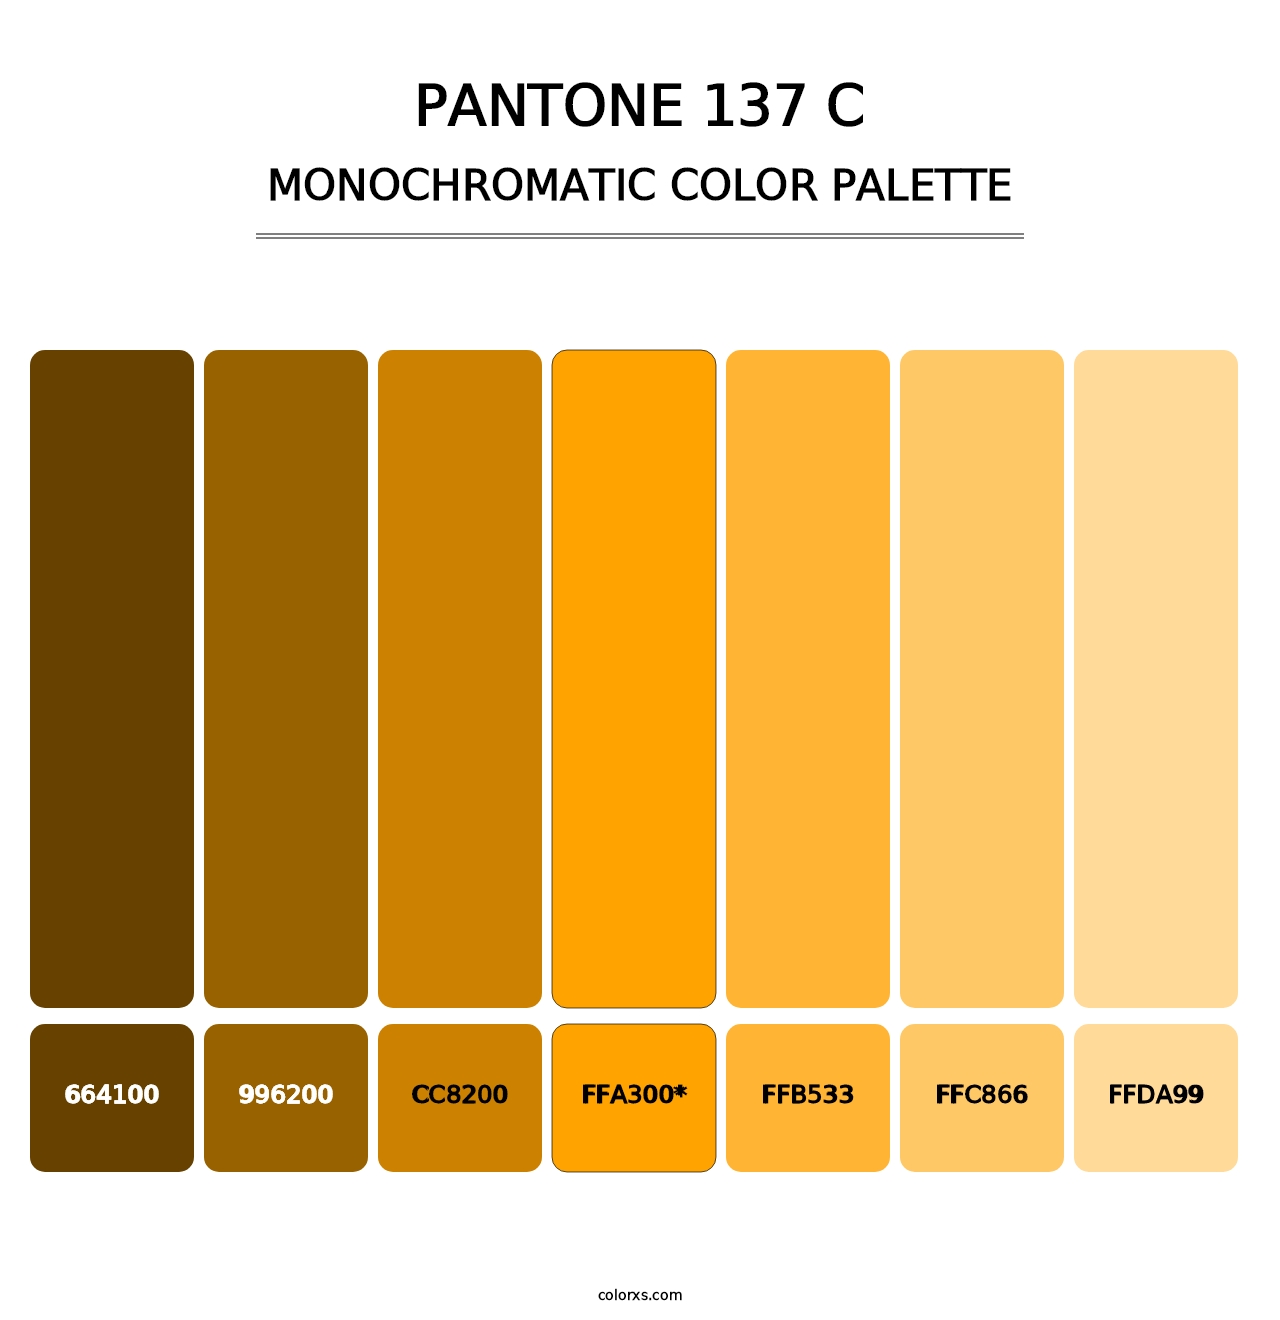 PANTONE 137 C - Monochromatic Color Palette